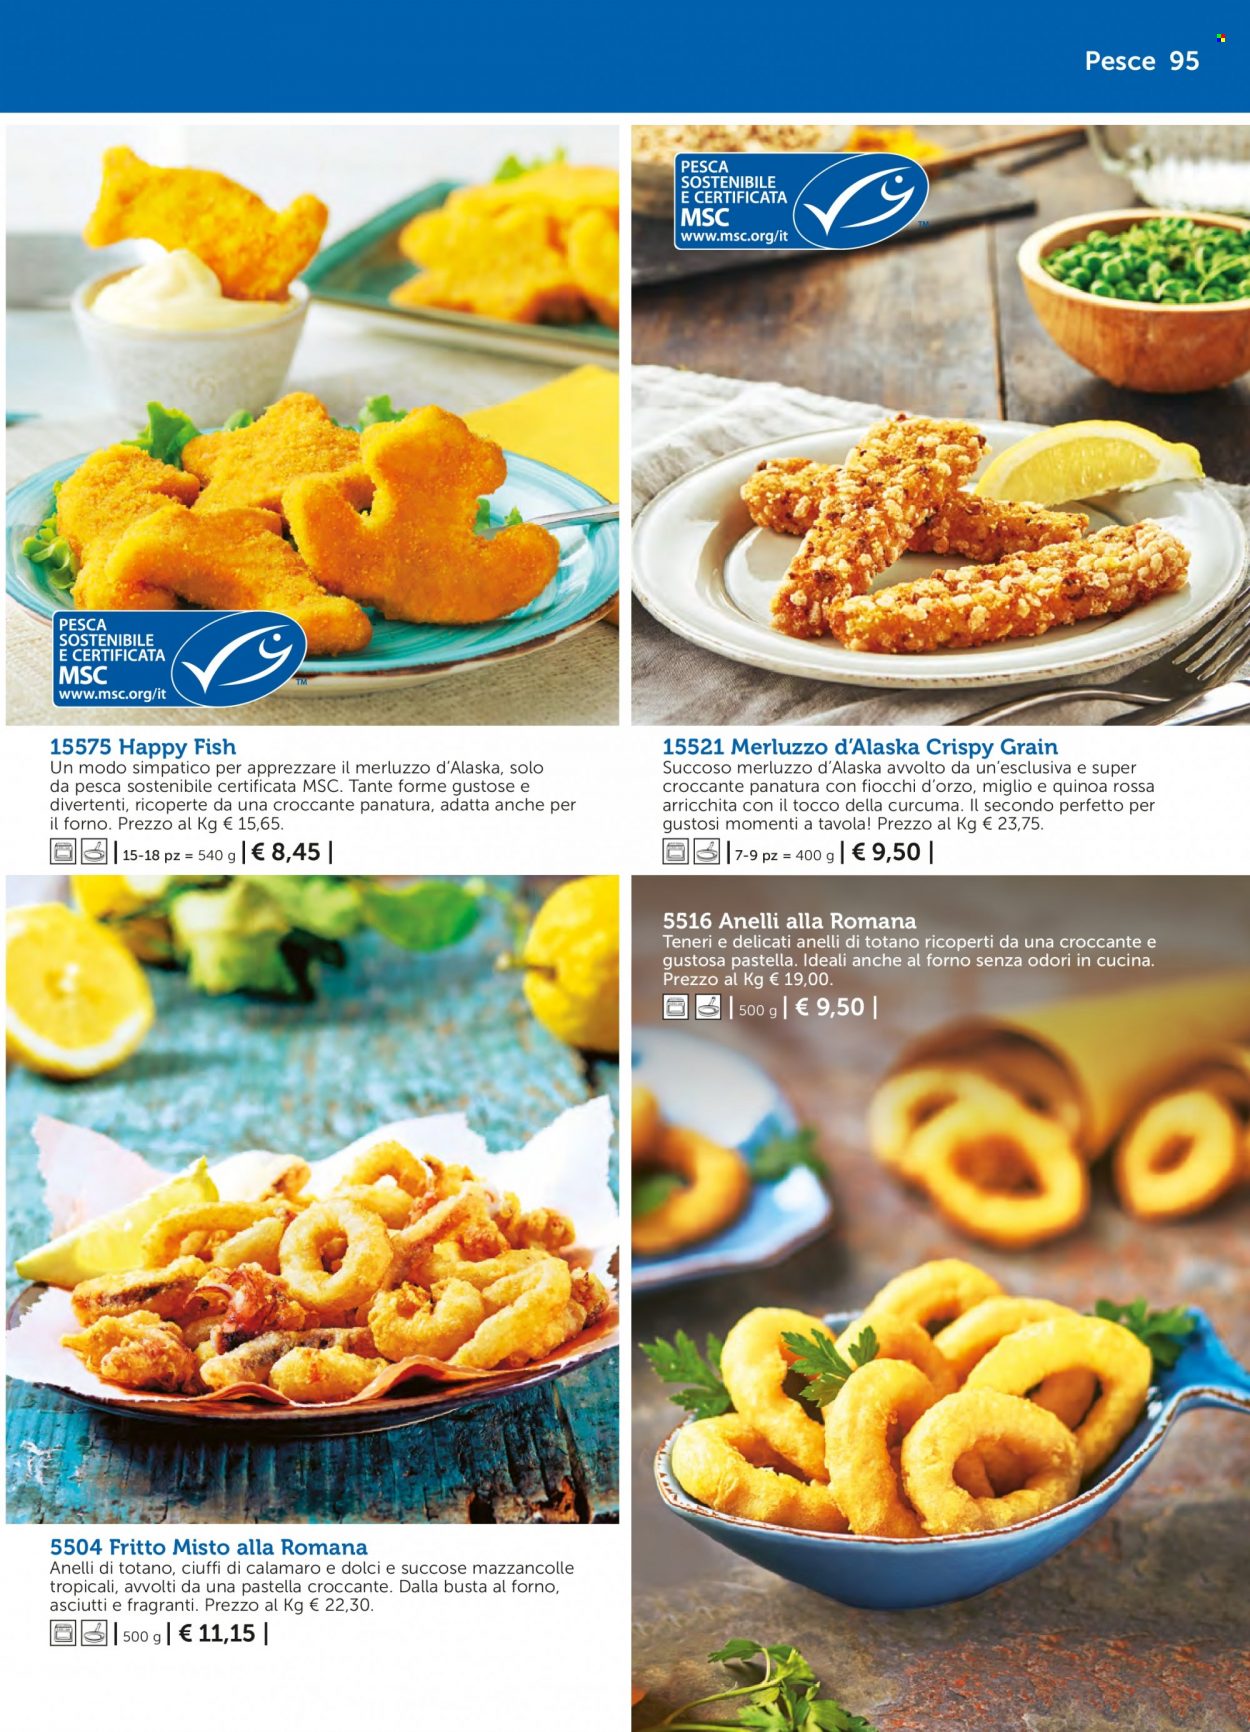 thumbnail - Volantino Bofrost - Prodotti in offerta - calamari, pesce, mazzancolle, merluzzo, totani, anelli di totano, fritto misto. Pagina 95.